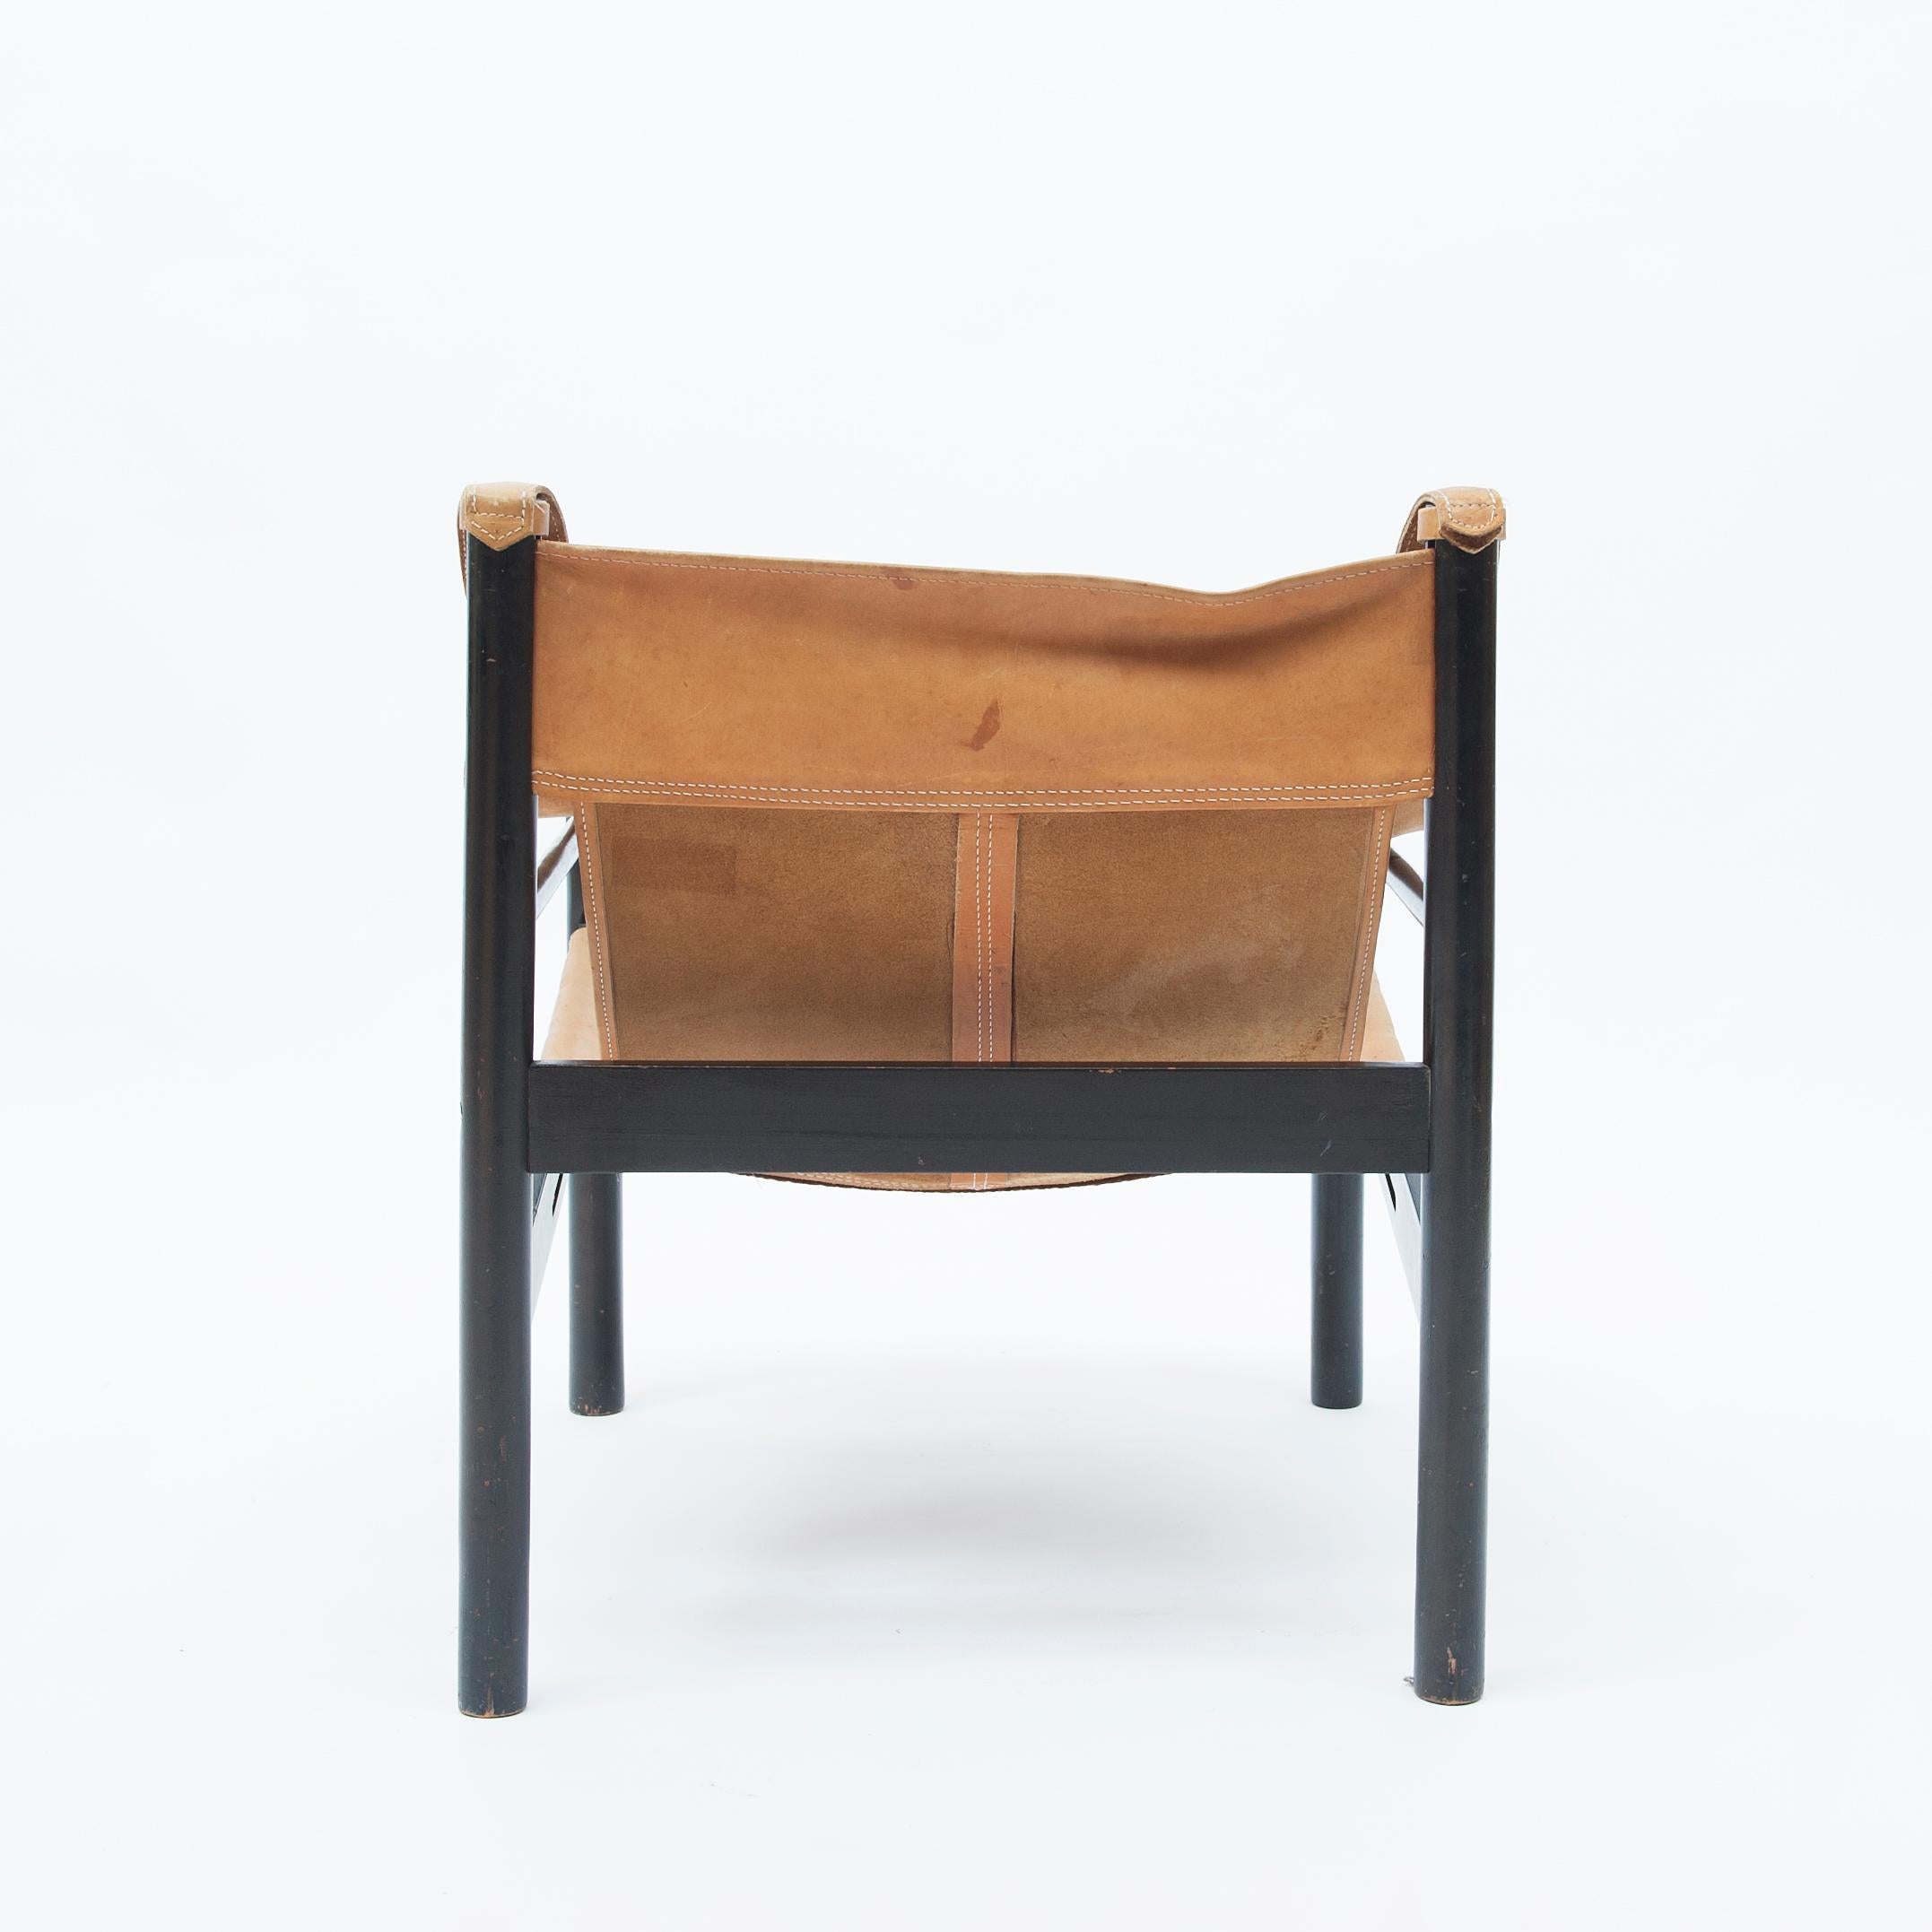 Safari-Sessel von Abel Gonzalez, Argentinien, 1960er Jahre (20. Jahrhundert)